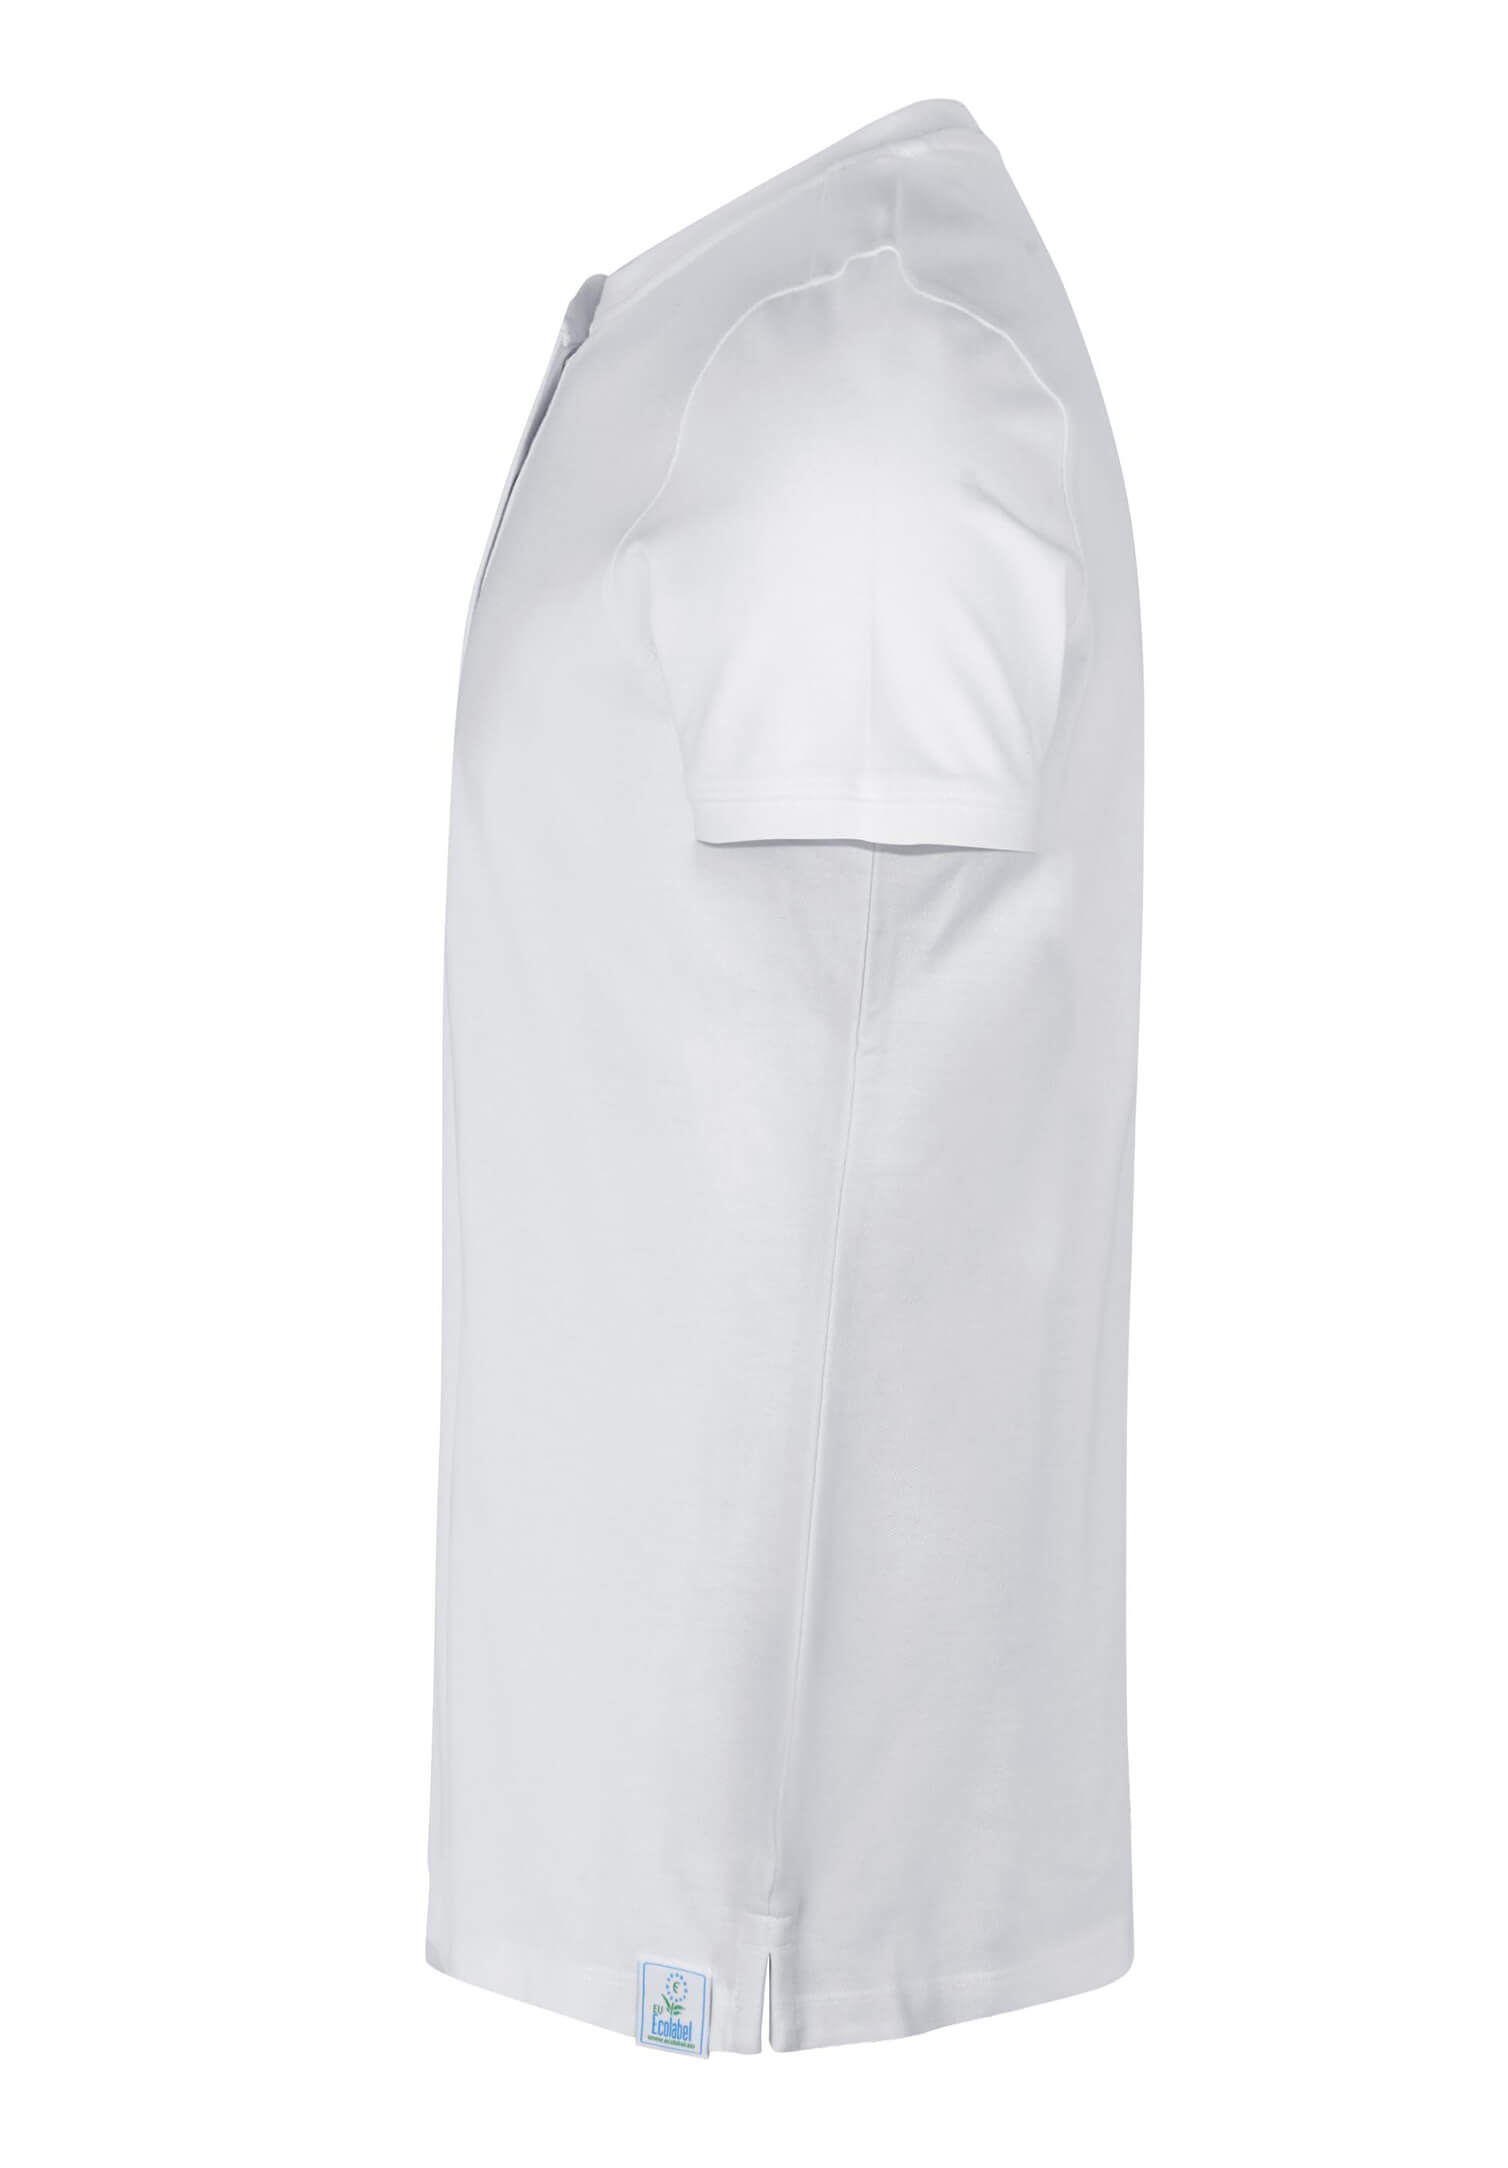 Damen Piquéshirt mit verdeckter Knopfleiste - weiß - XS